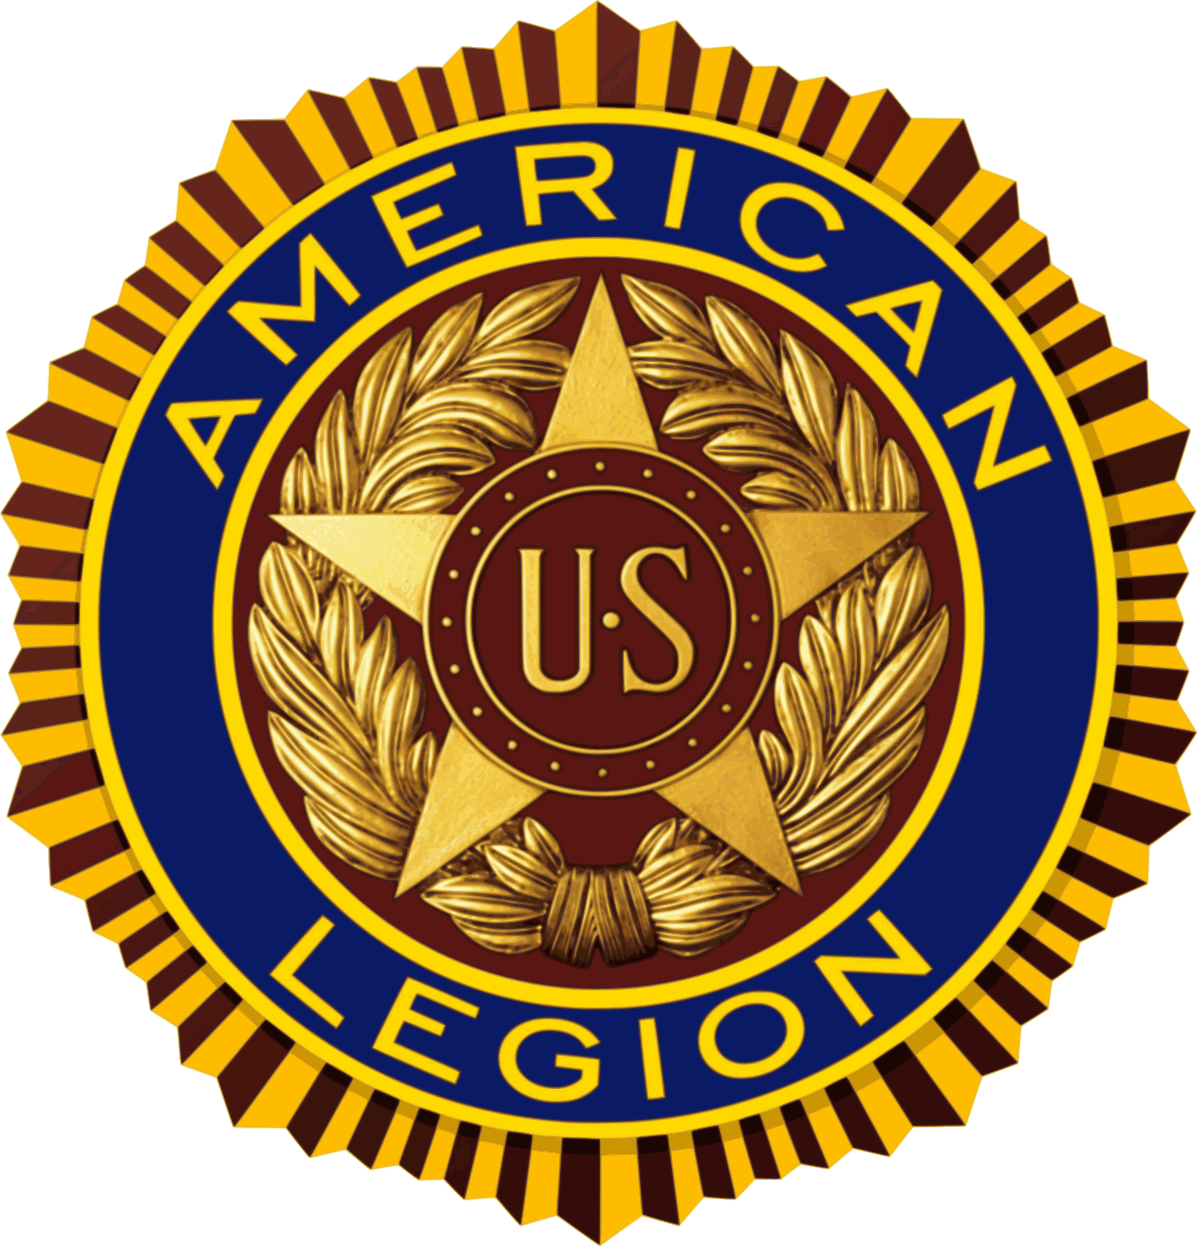 Middleburg American Legion